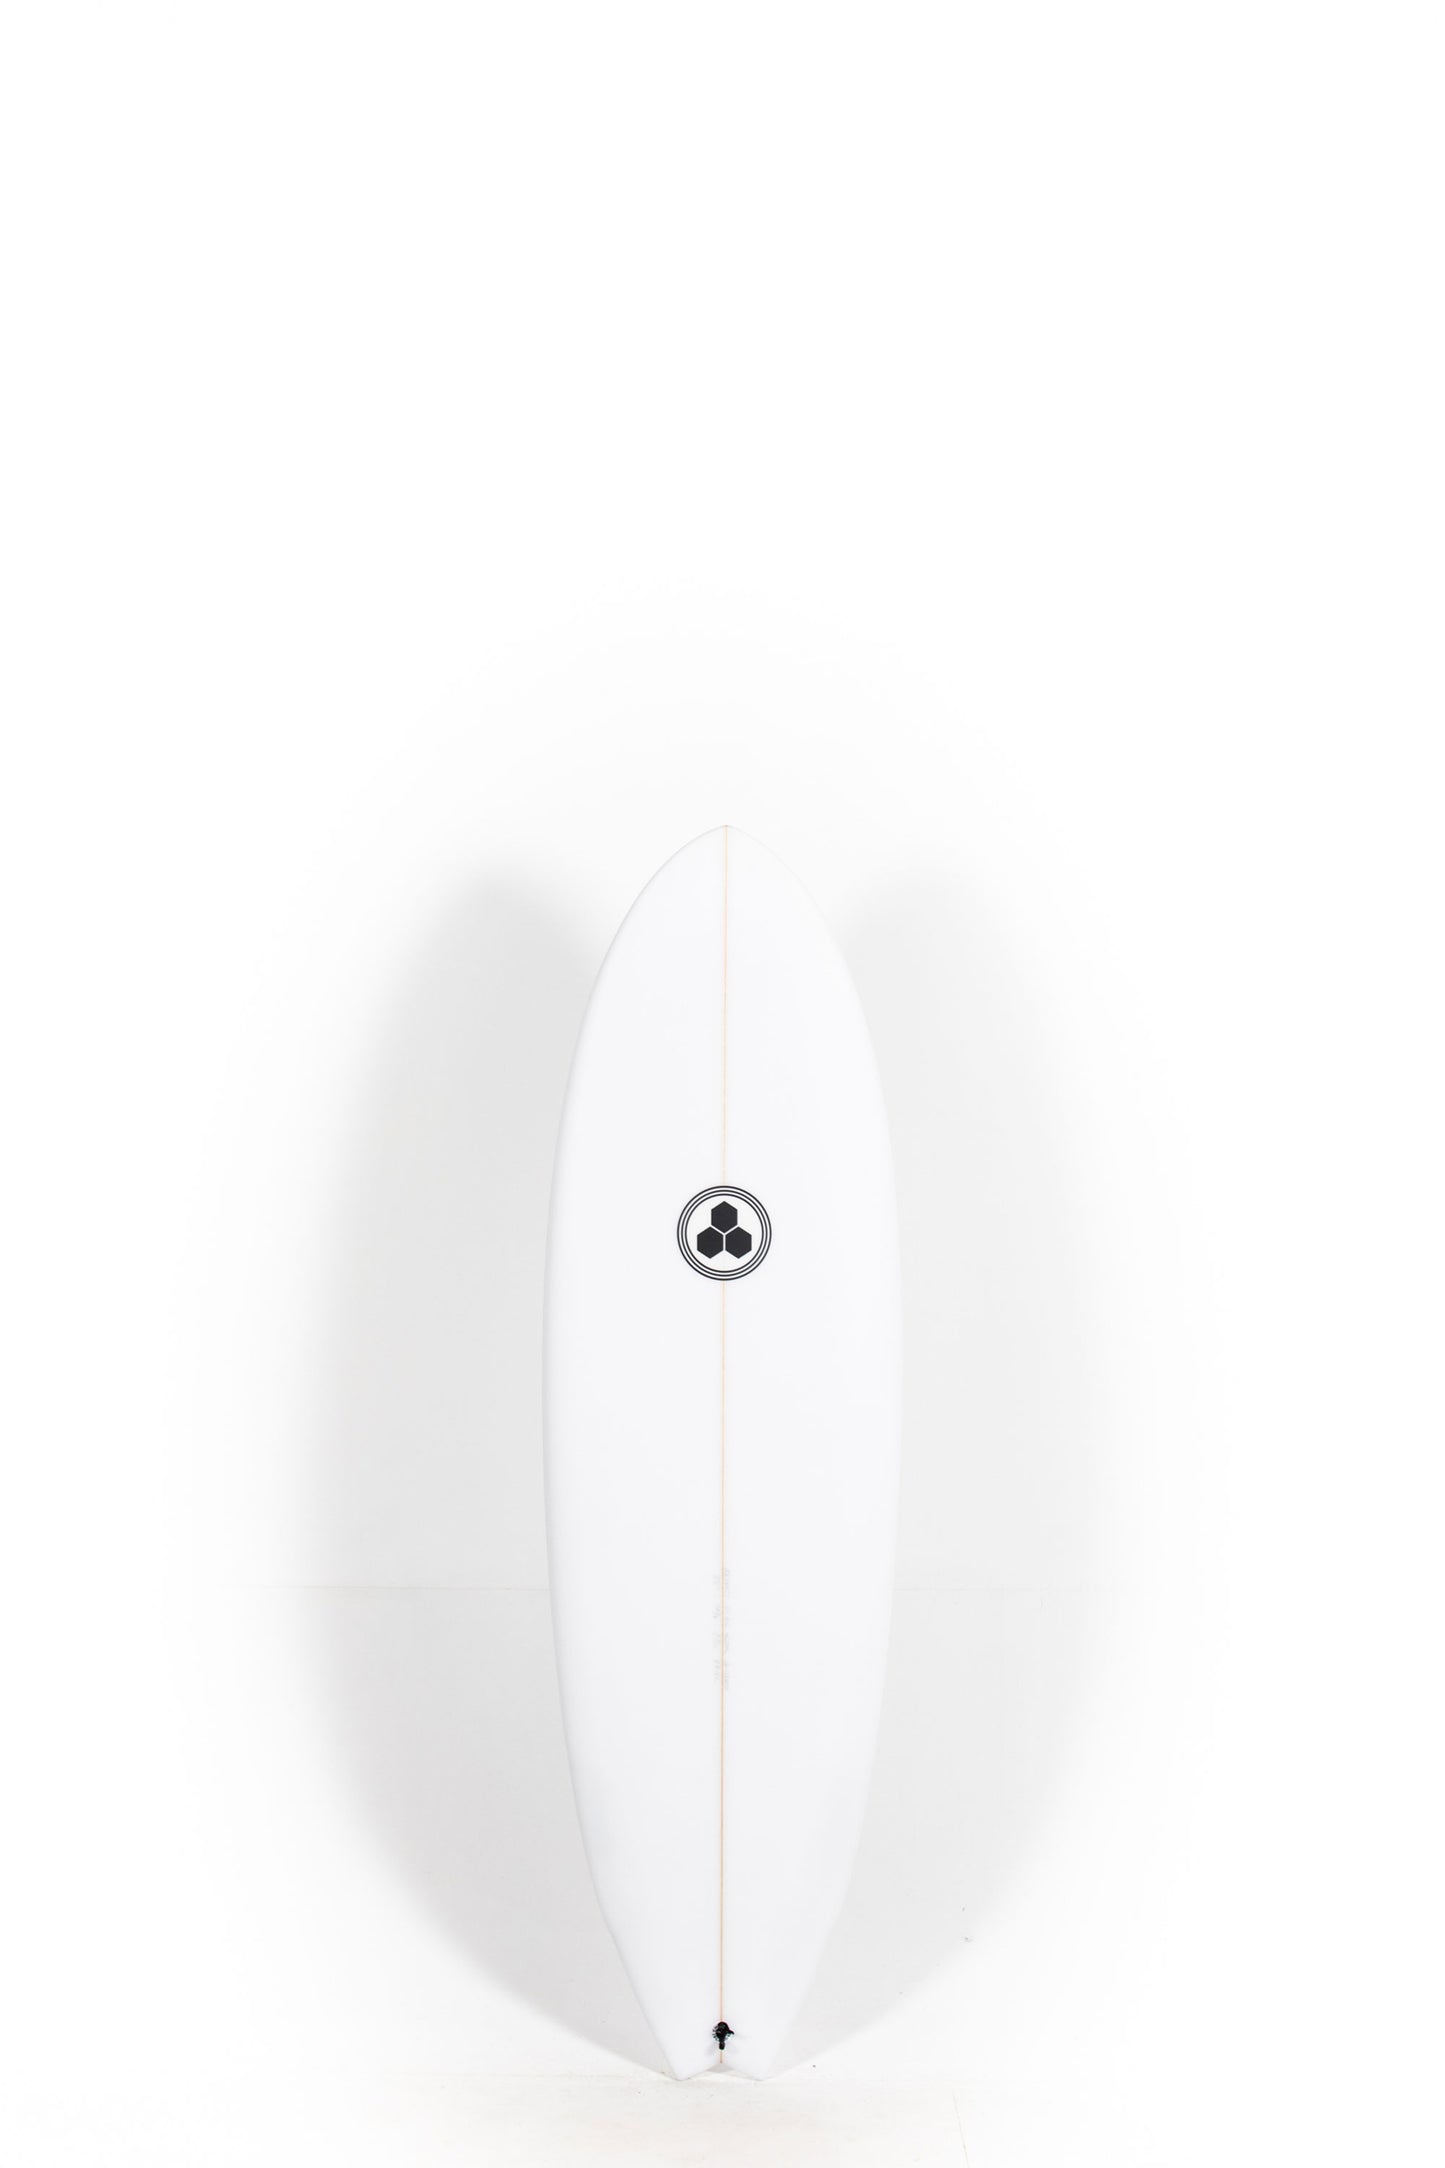 Pukas Surf Shop Channel Islands - G-Skate by Al Merrick - 5'6" x 19 1/4 x 2 7/16 - 29.15L - CI26677